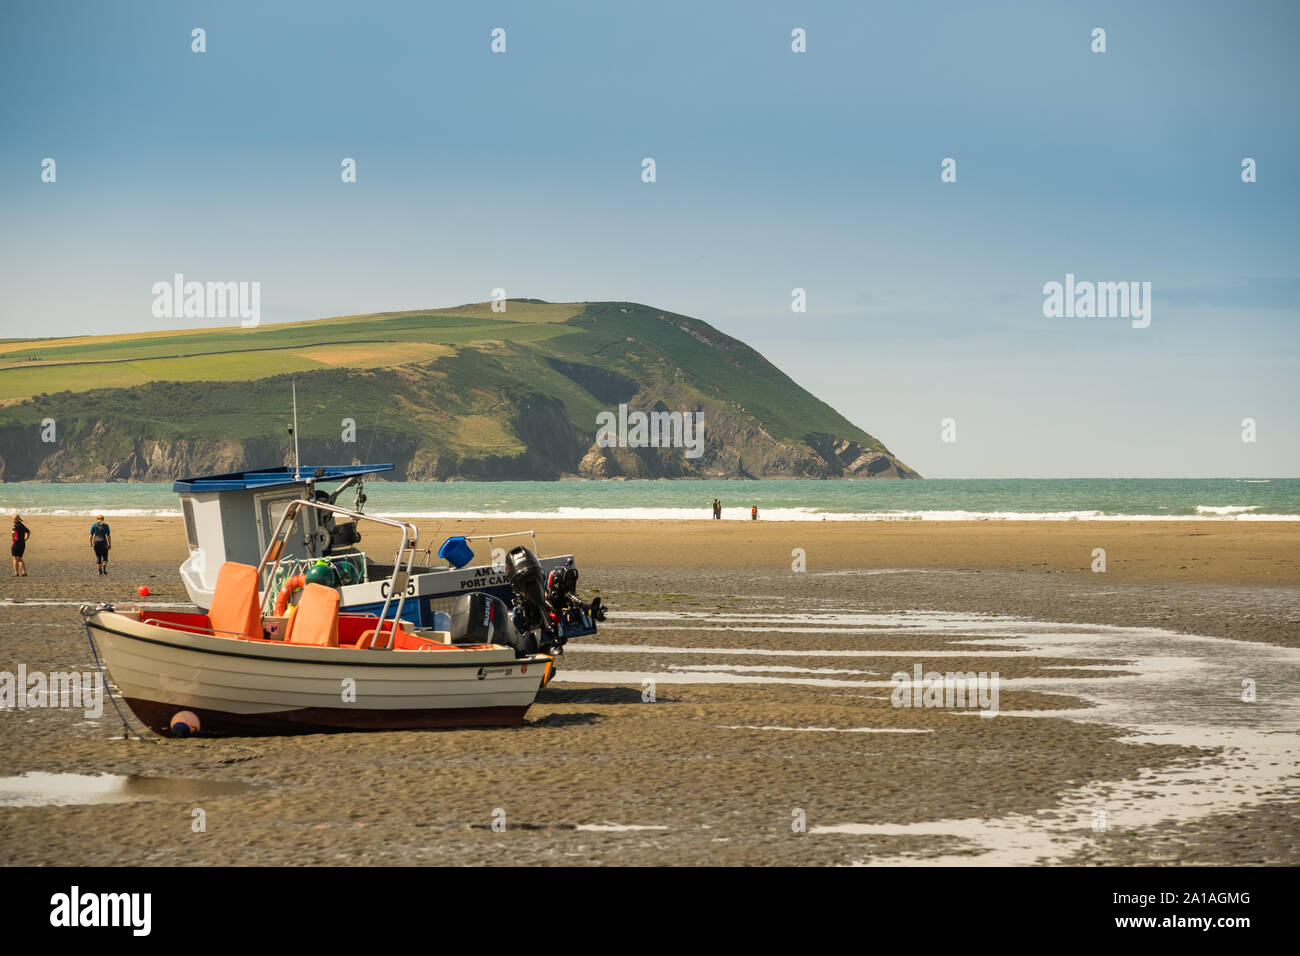 Voyages et tourisme au Royaume-Uni : les gens sur la plage de sable à l'Parrog Trefdraeth), Newport (Pembrokeshire, Pays de Galles de l'Ouest, août 2019 Banque D'Images